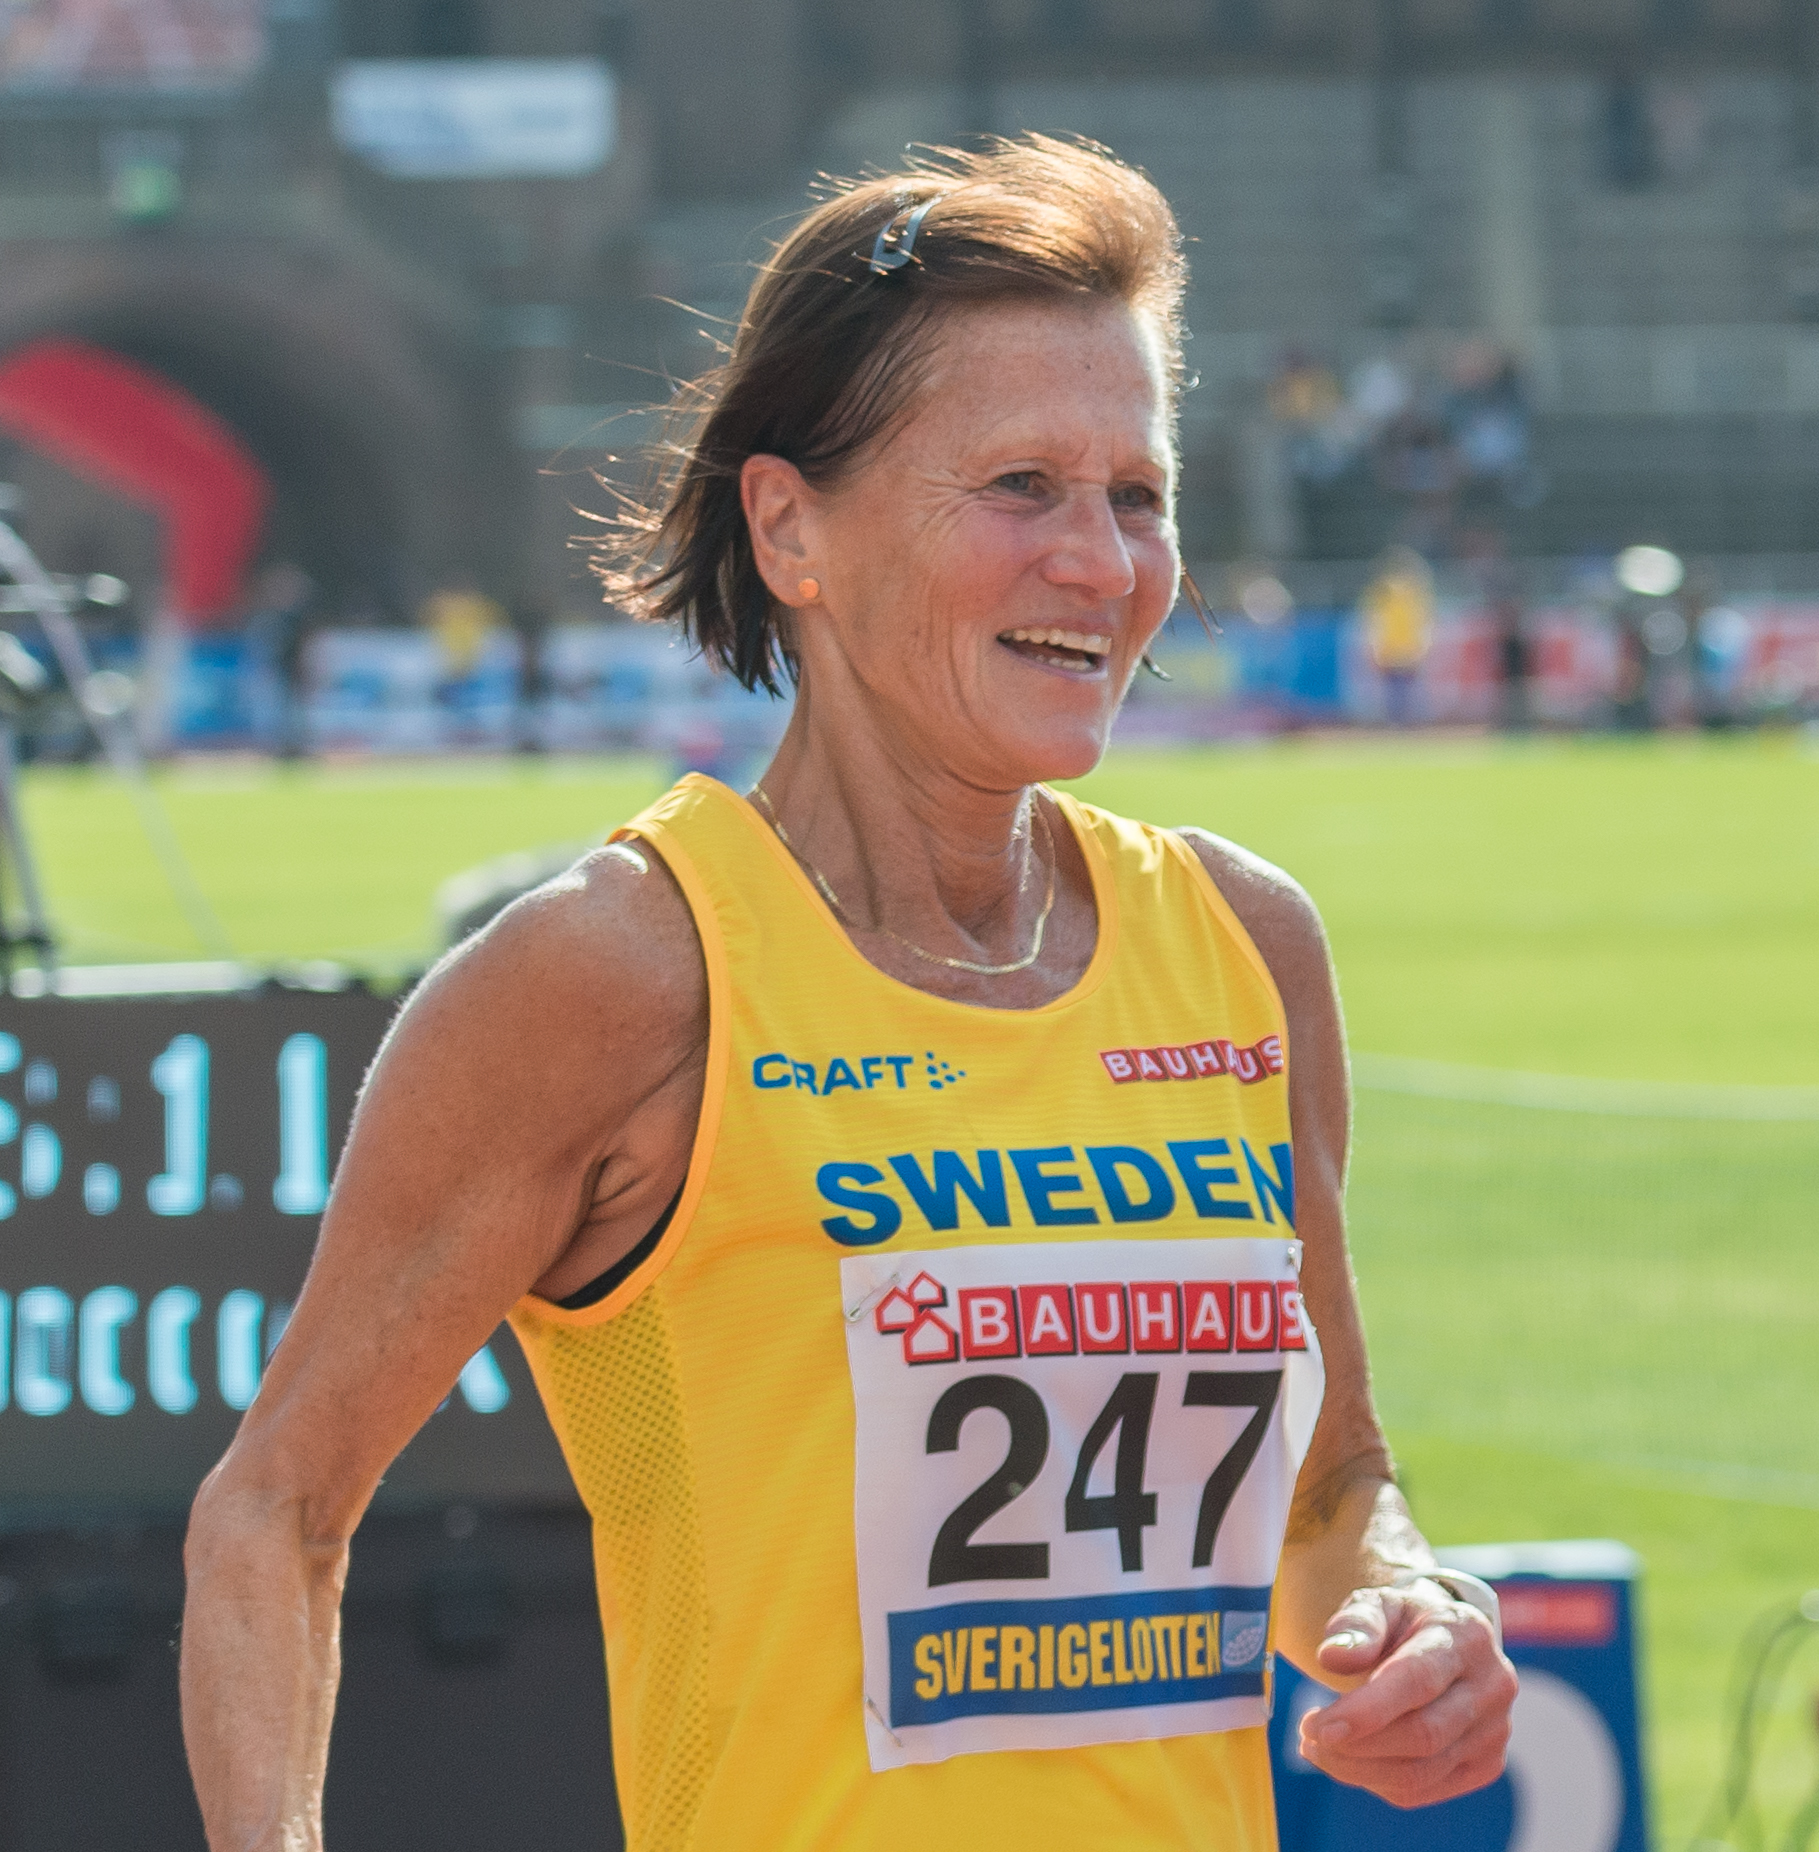 Siv Gustavsson (Karlström) during the [[Finland-Sweden Athletics International